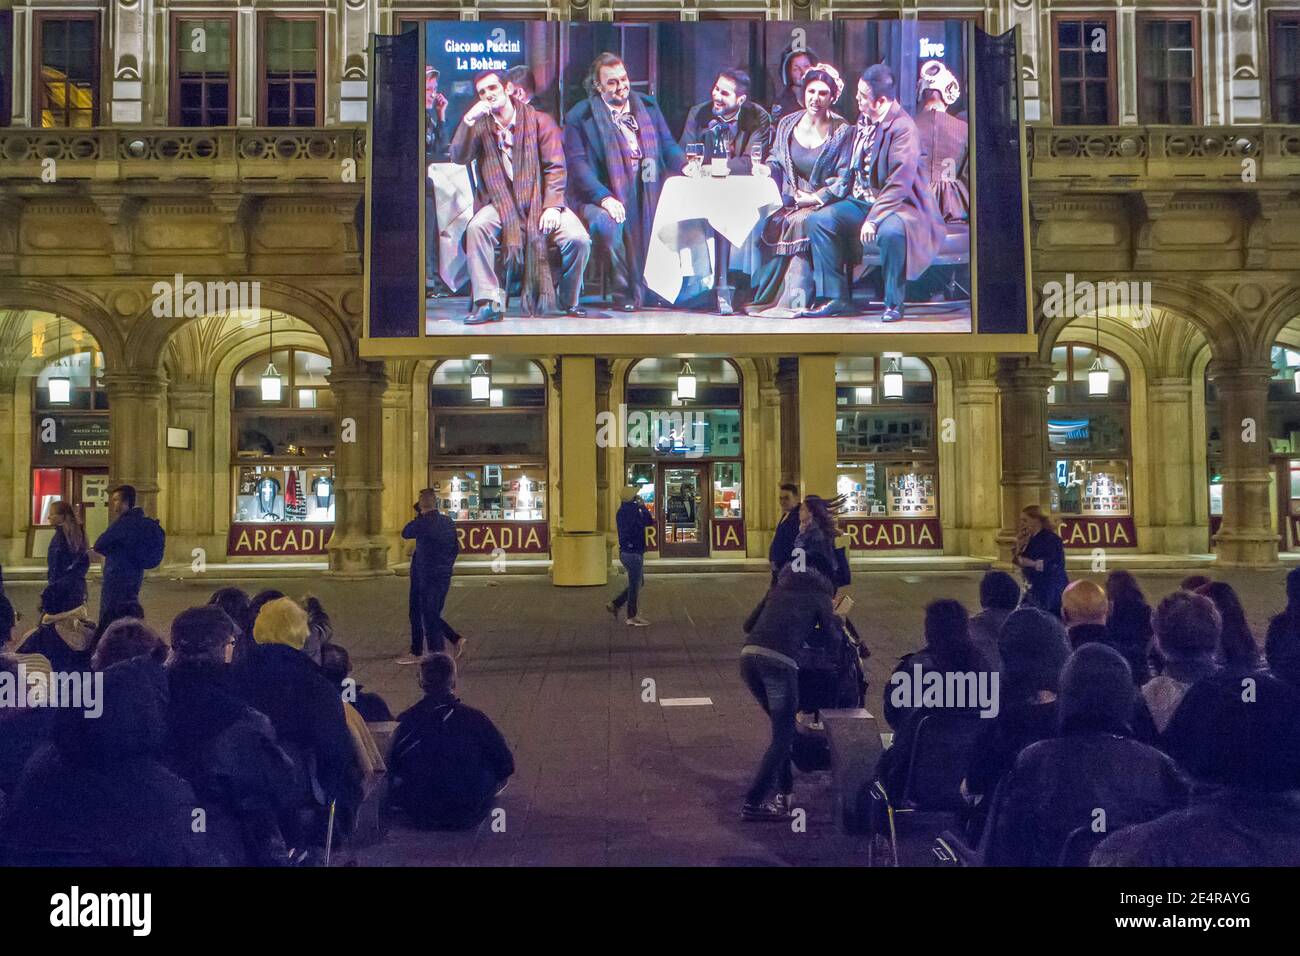 Personen, die vor der Wiener Staatsoper oder der Wiener Staatsoper sitzen Haus sehen eine Leistung kostenlos auf einem Outdoor-Bildschirm Stockfoto